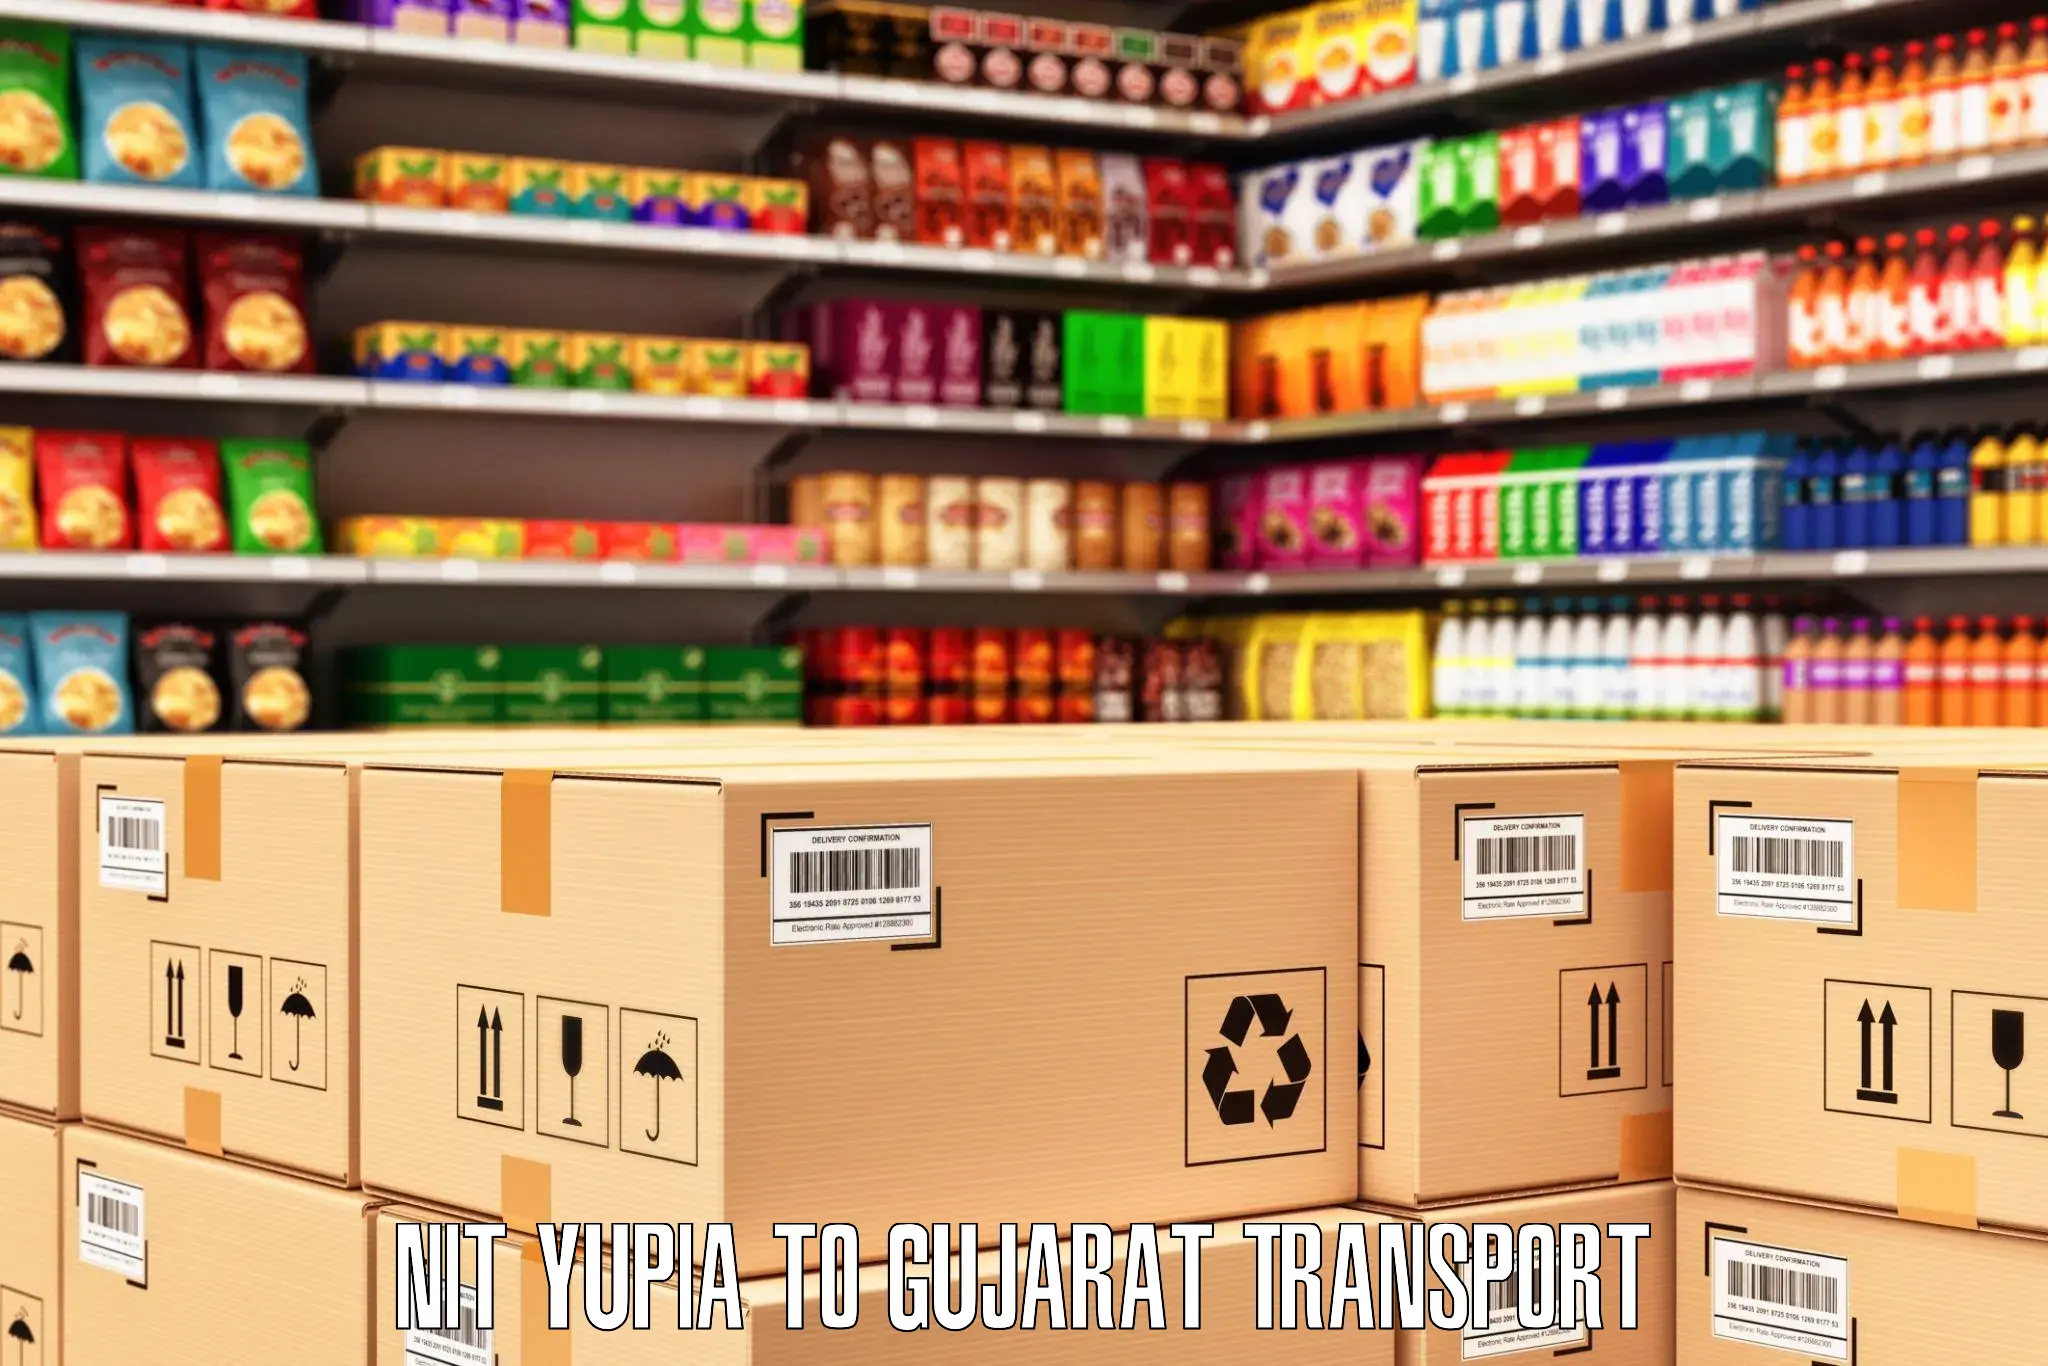 Pick up transport service NIT Yupia to Gandhinagar